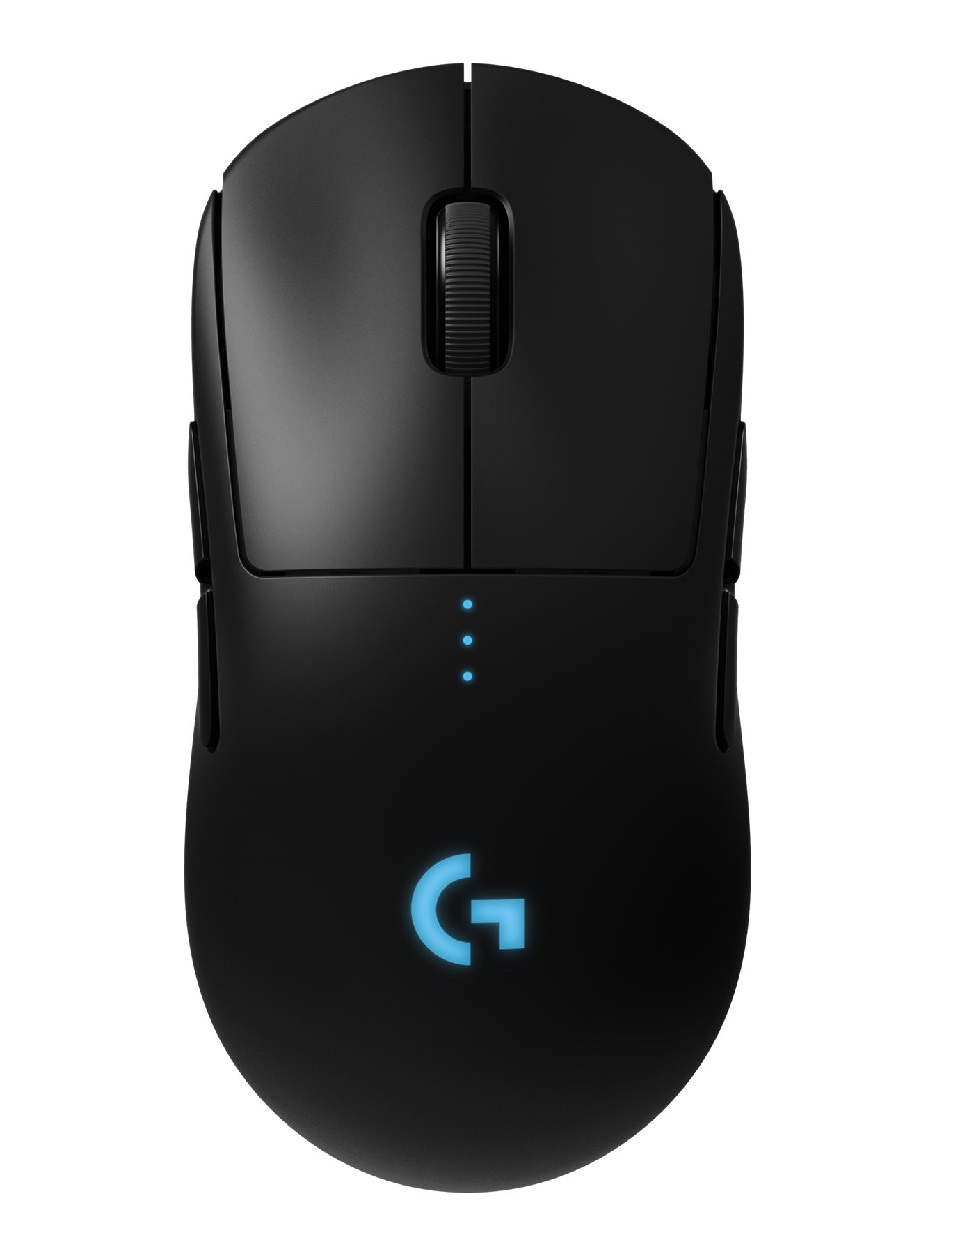 Lærd Berolige Entreprenør Logitech Gaming Mouse G Pro Optisk Trådløs Gaming Mus Sort